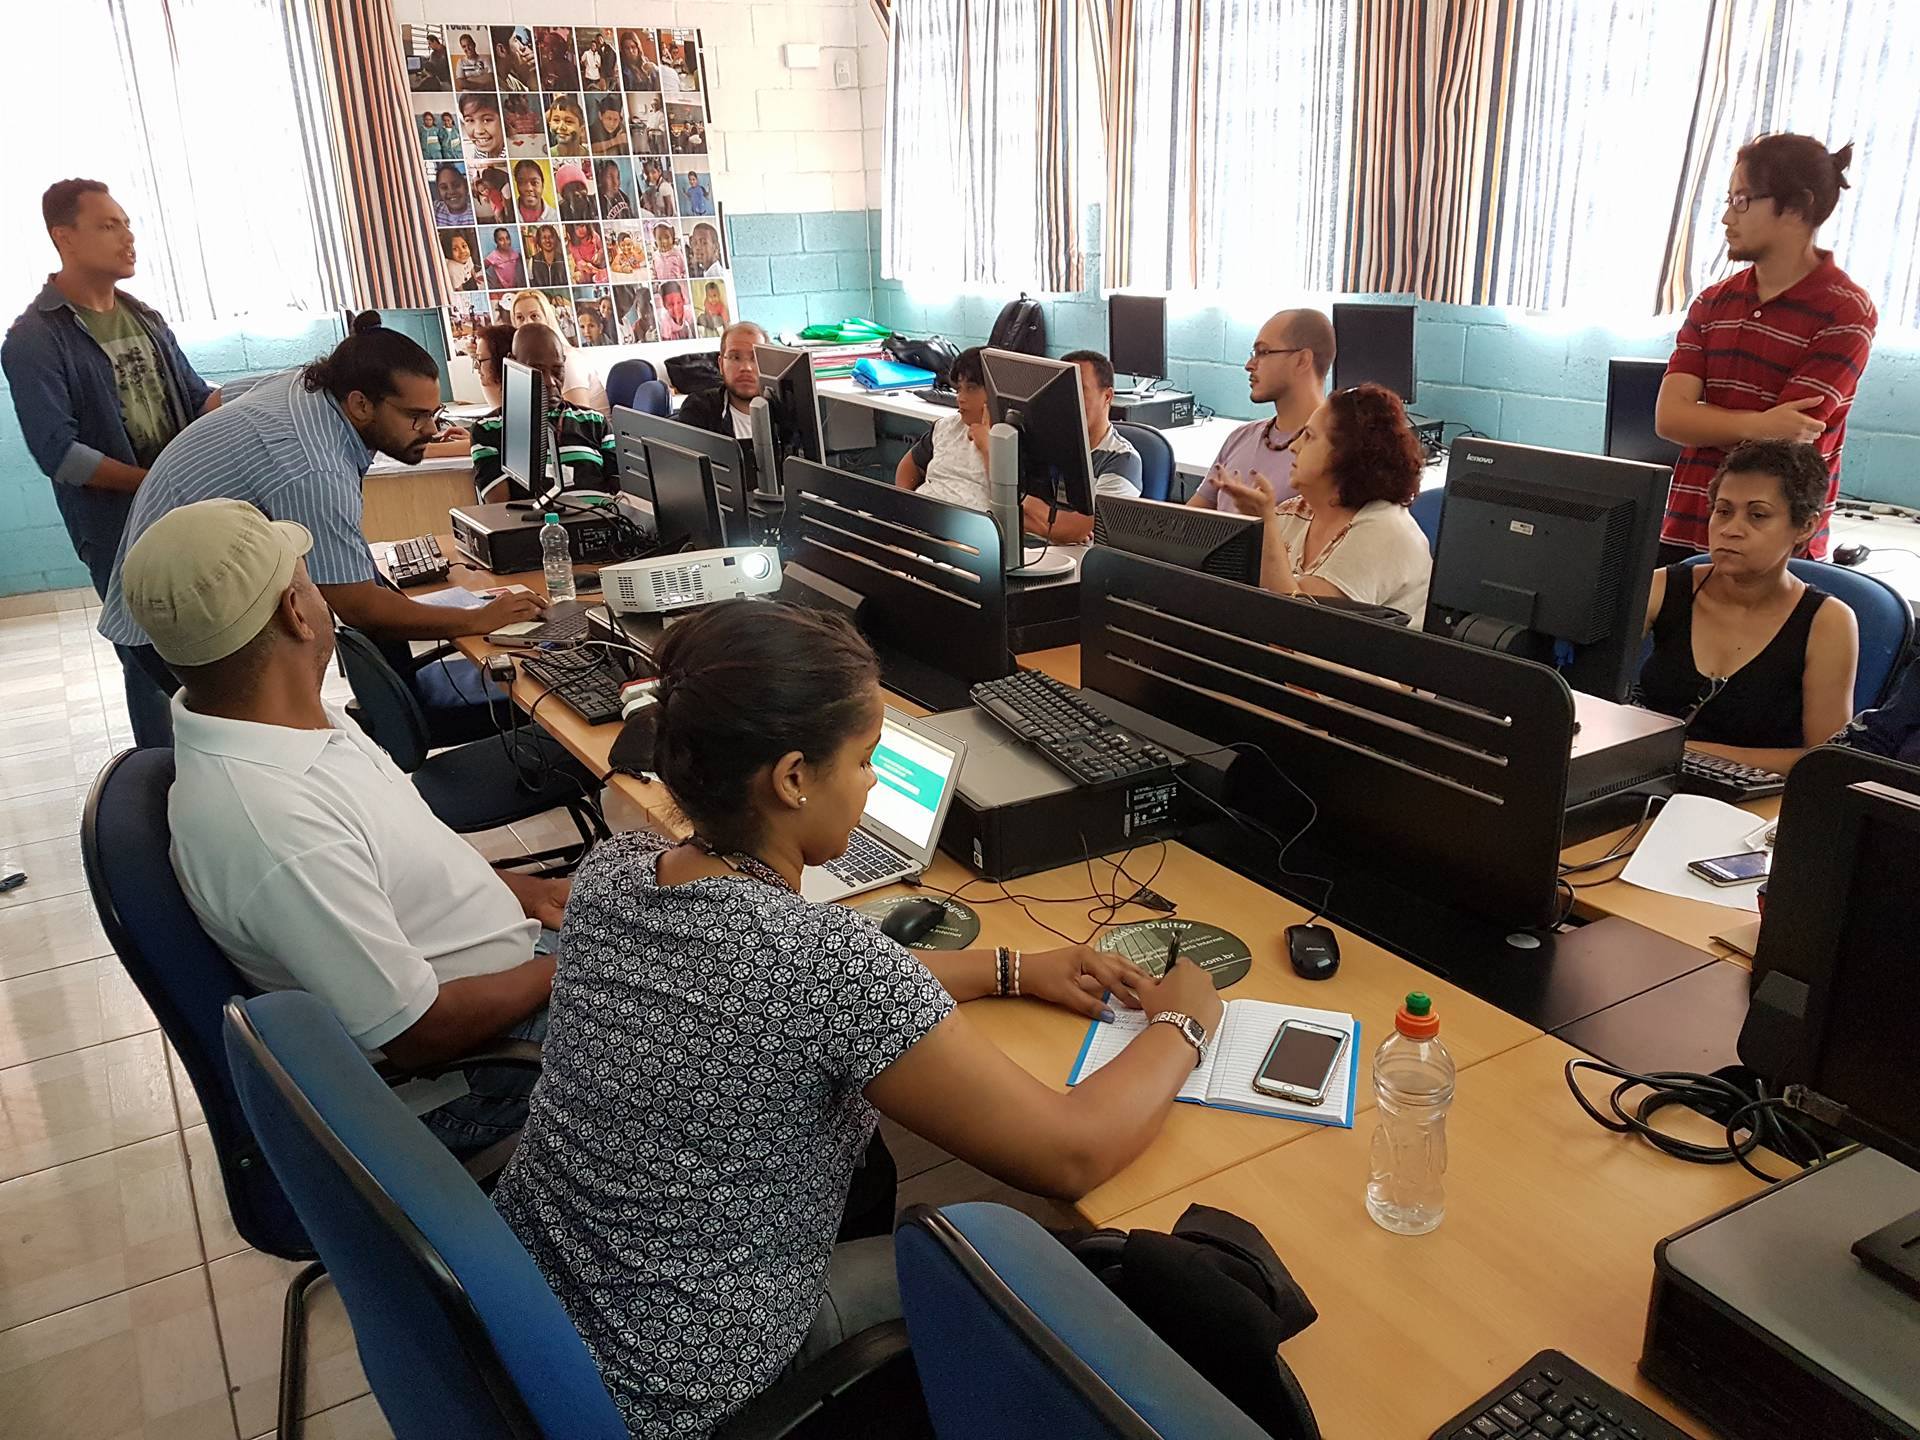 Laboratório de computação, membros do conselho gestor sentados nos computadores e instrutores da CGM em pé explicando os temas.